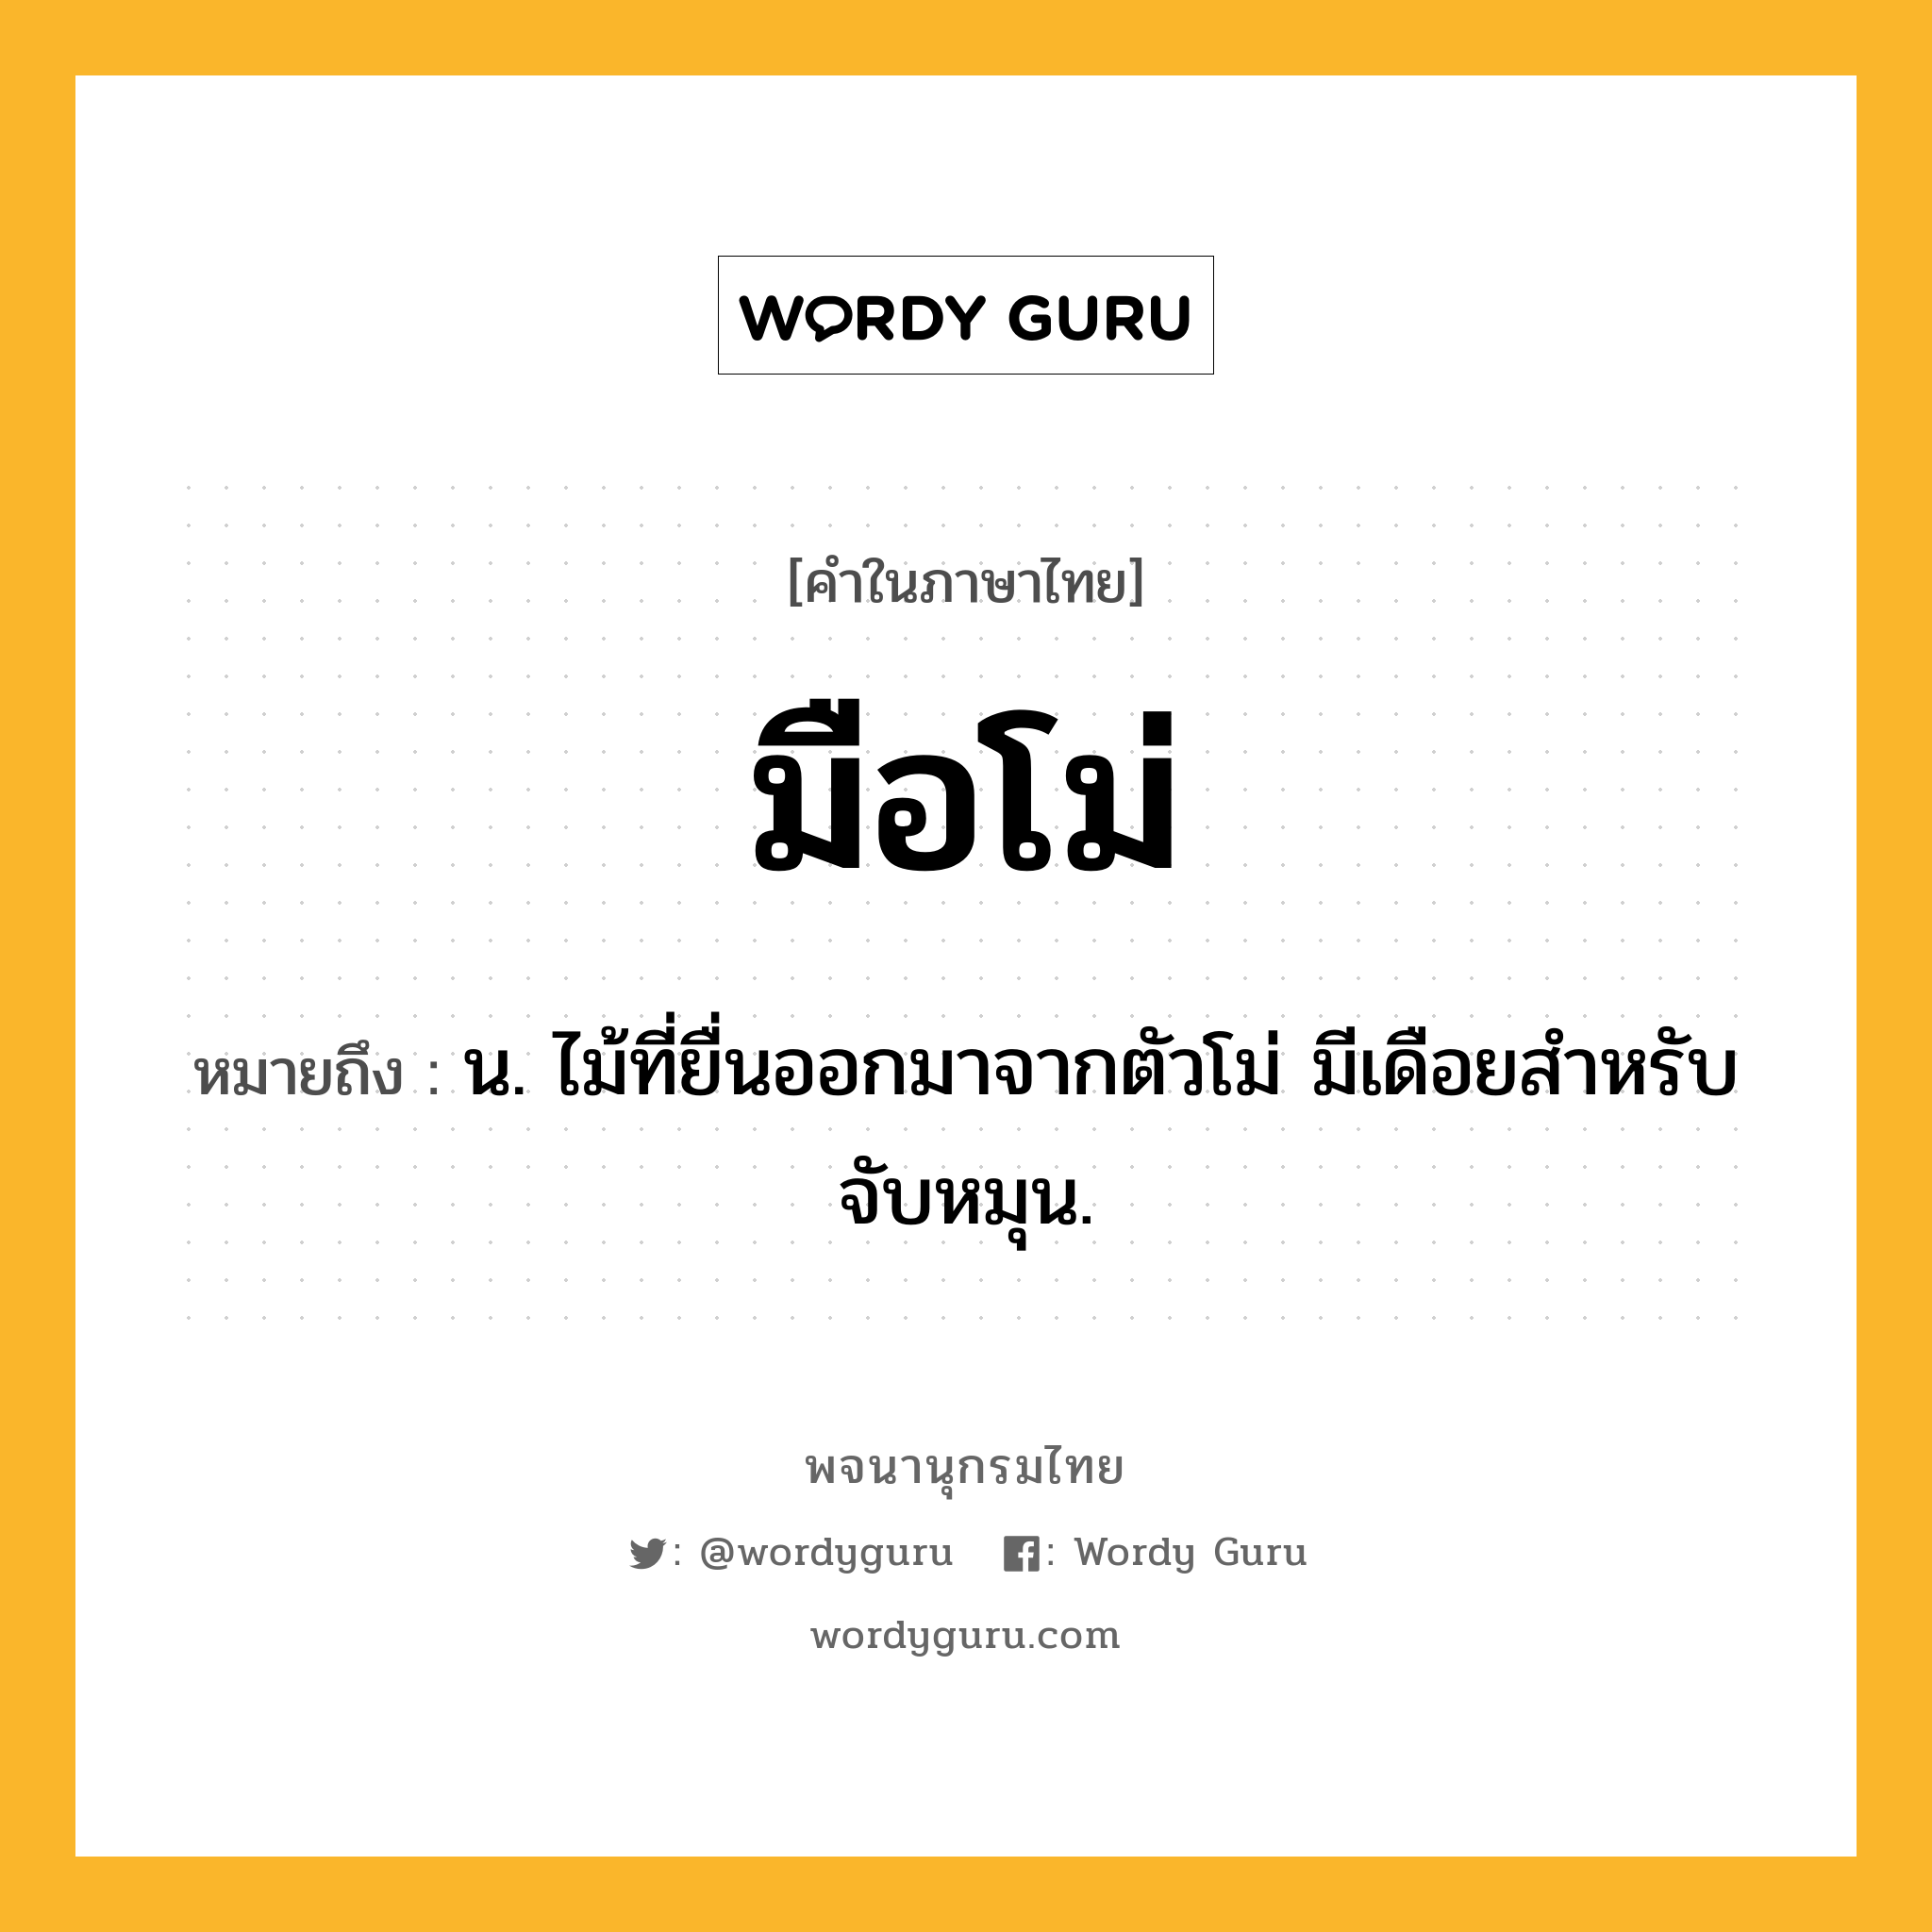 มือโม่ ความหมาย หมายถึงอะไร?, คำในภาษาไทย มือโม่ หมายถึง น. ไม้ที่ยื่นออกมาจากตัวโม่ มีเดือยสำหรับจับหมุน.